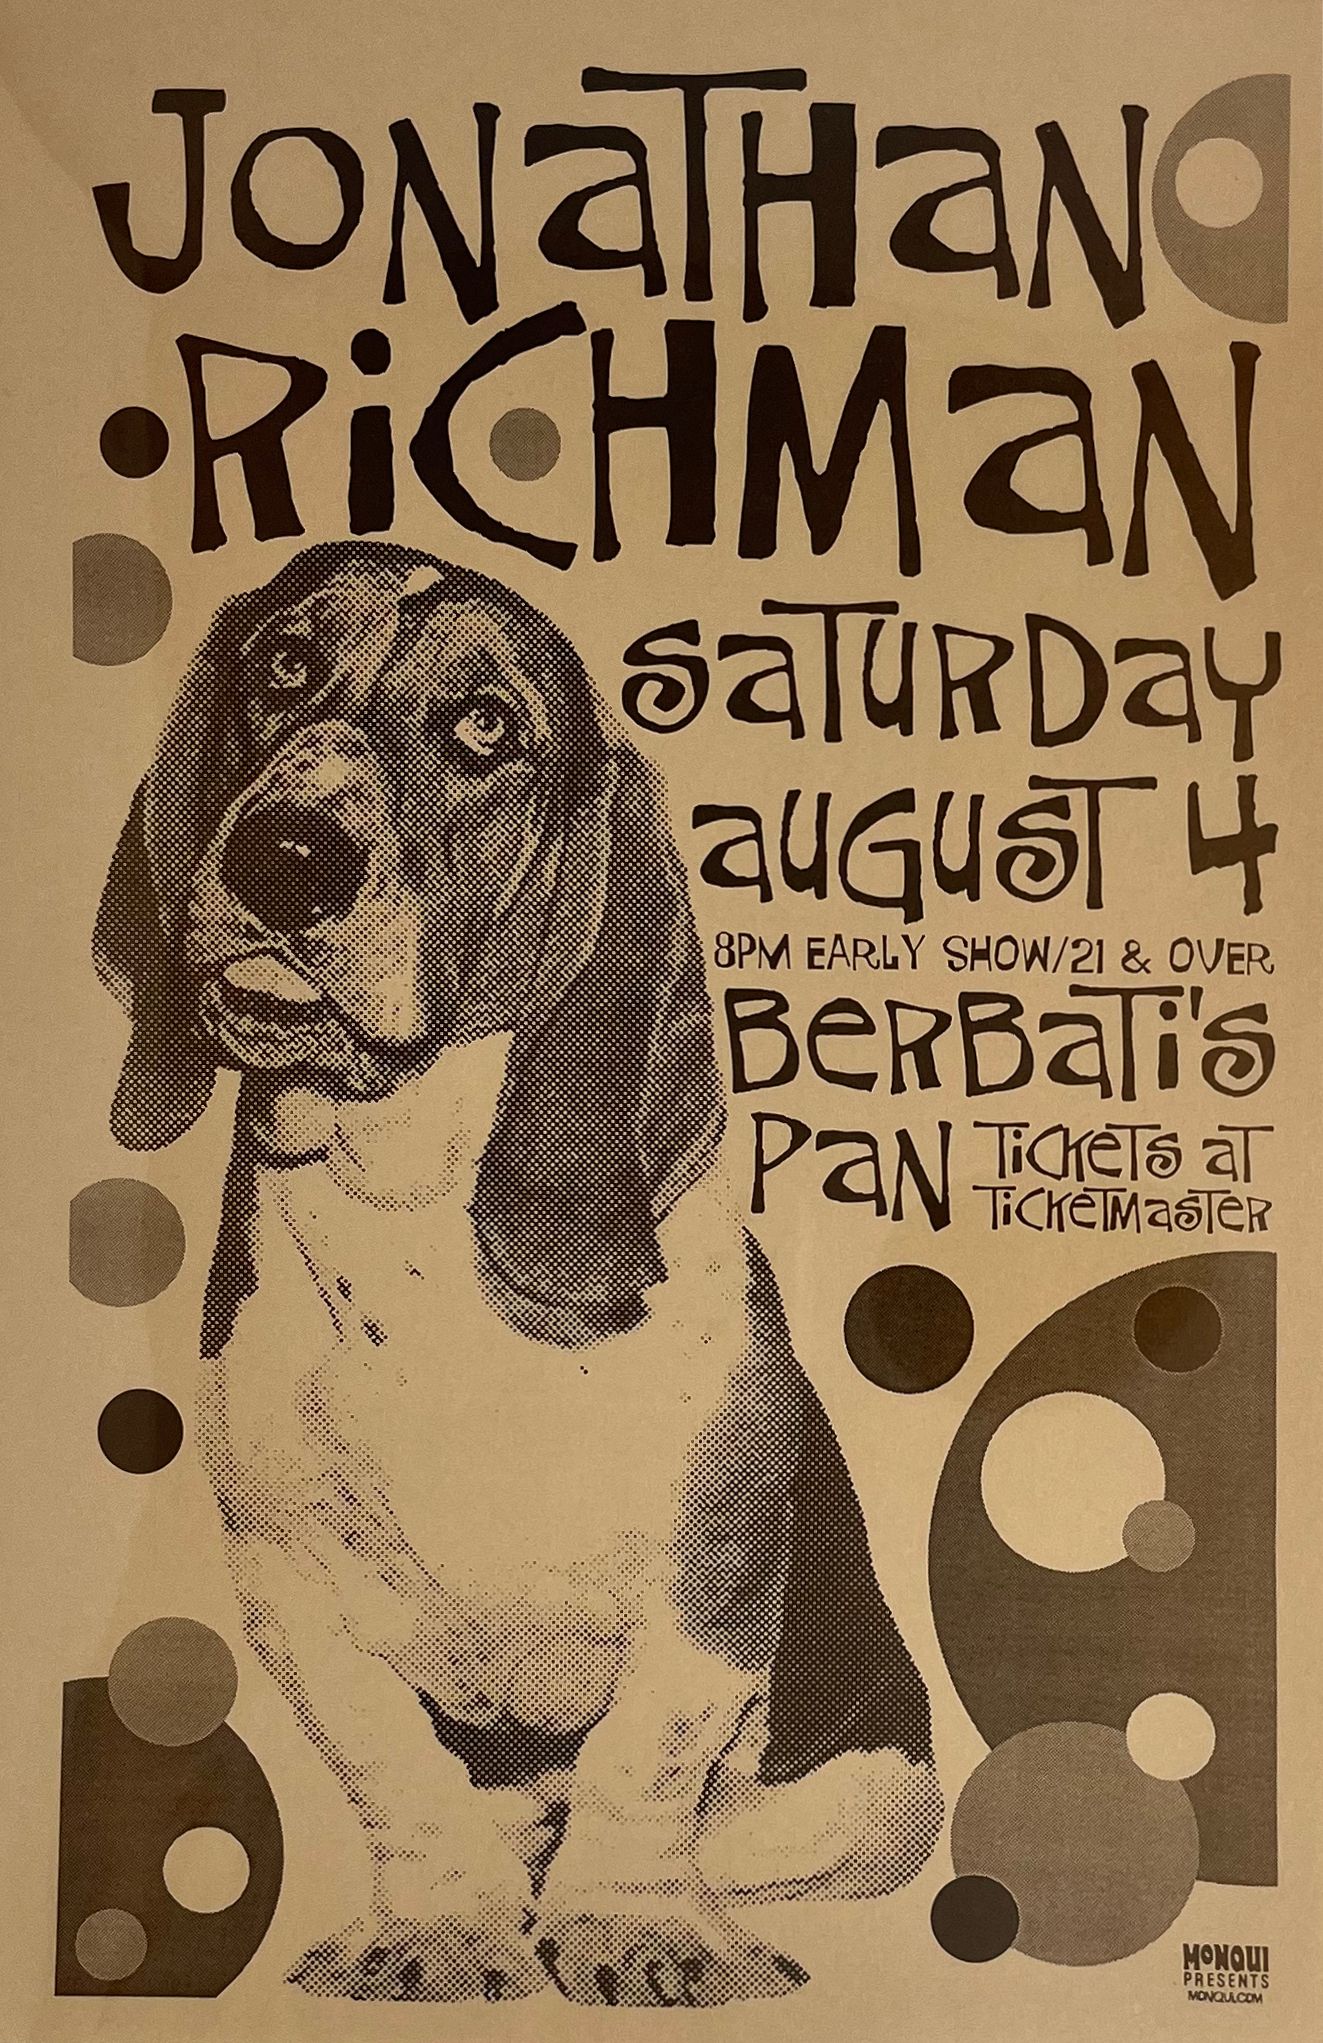 MXP-140.28 Jonathan Richman Berbati's Pan 2001 Concert Poster